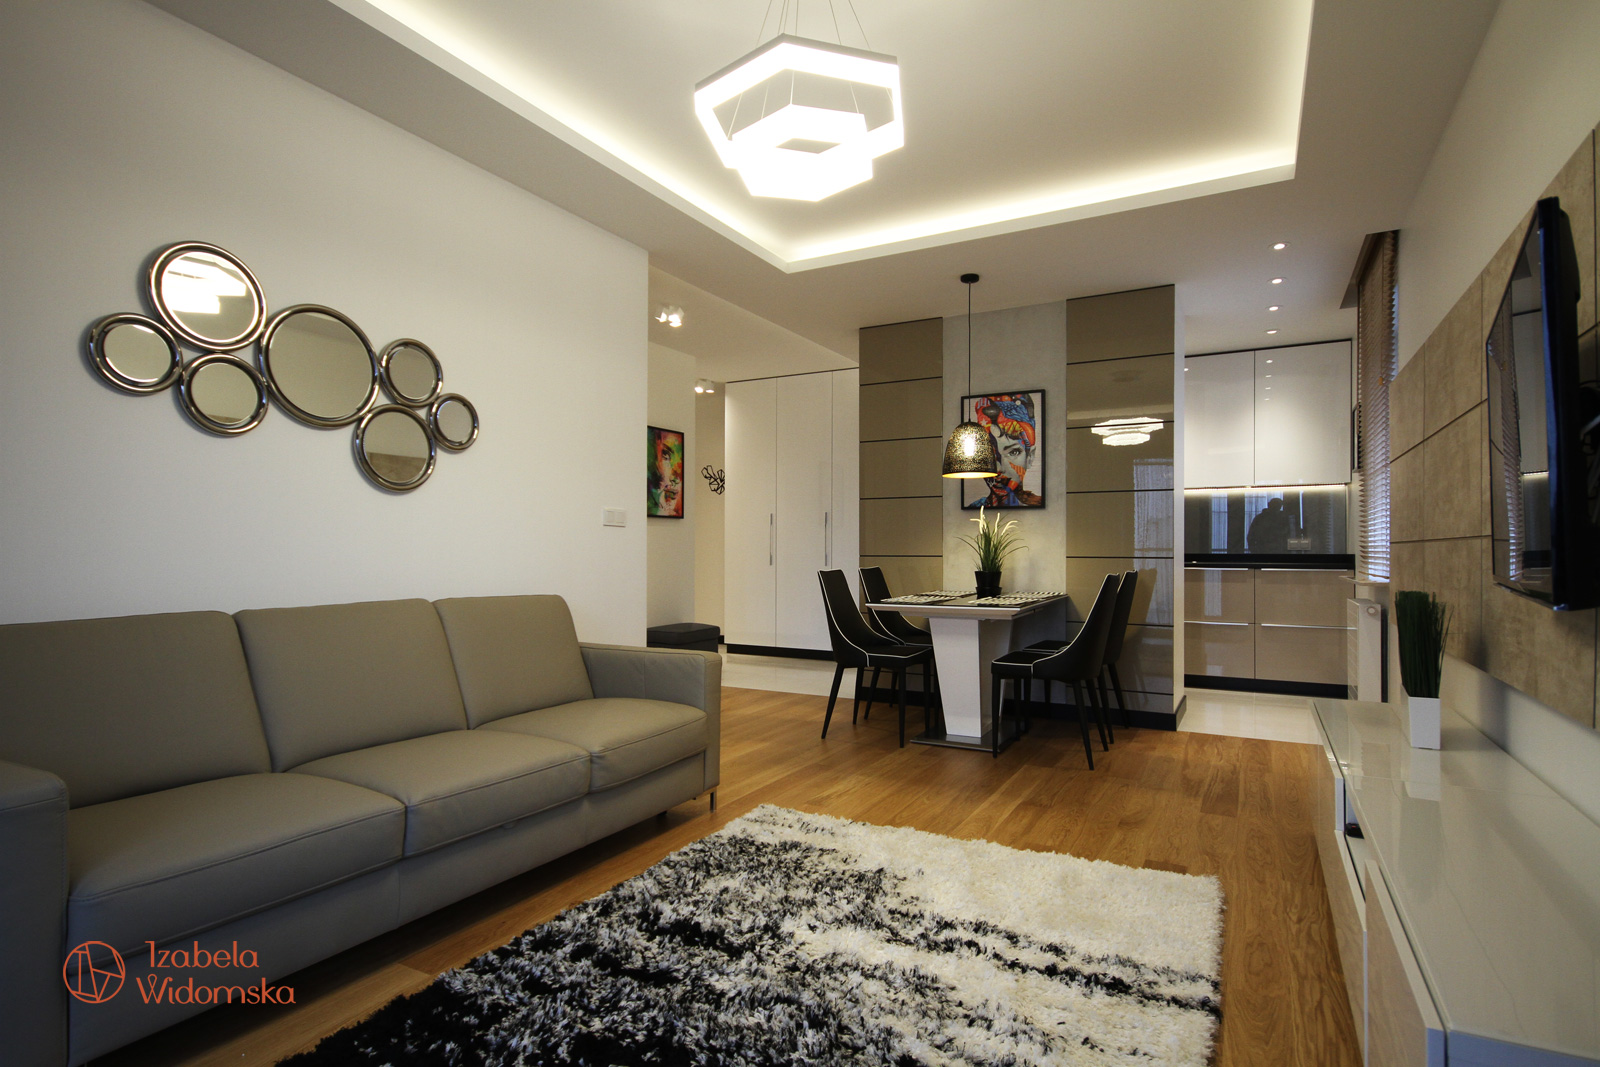 Apartament w kolorze cappucino | Ciepło Komfort Przestrzeń | Projekt wnętrza architekt Izabela Widomska